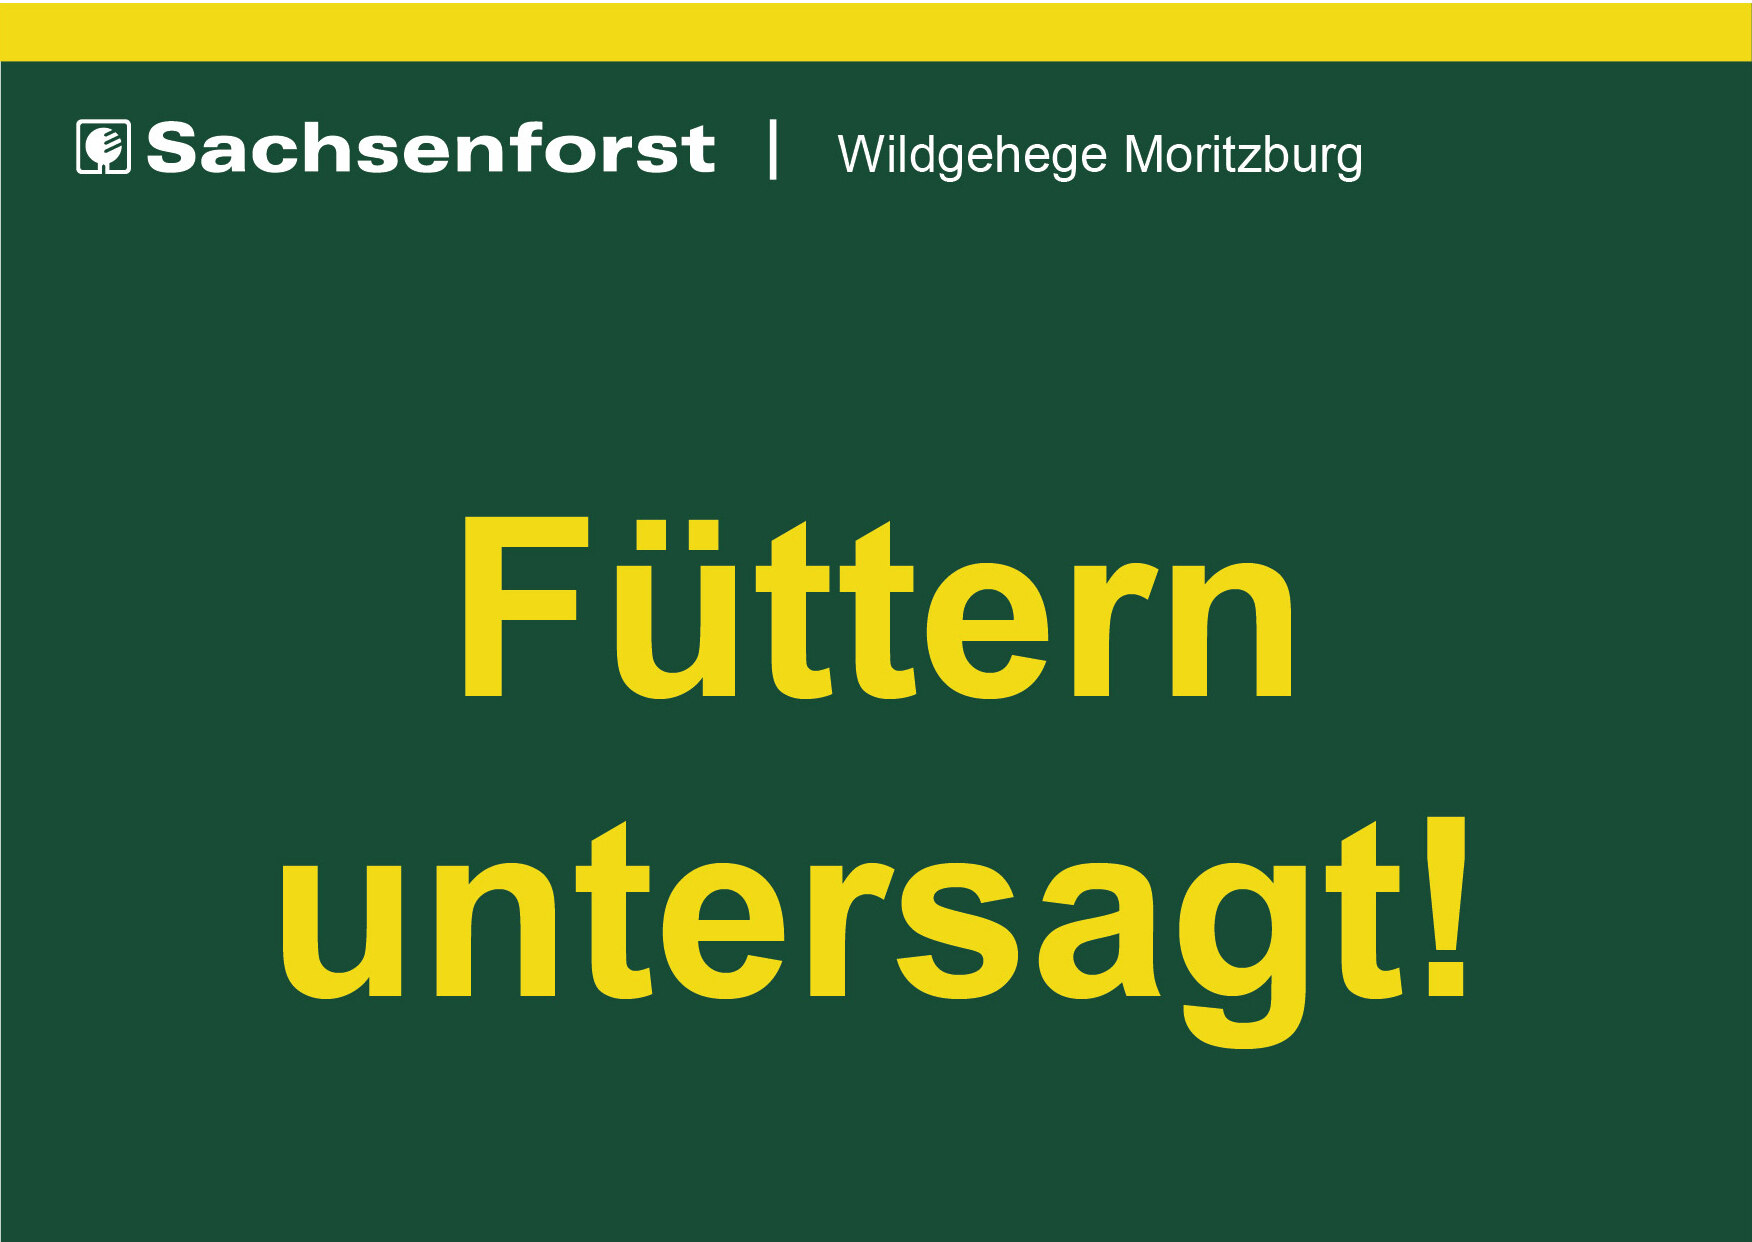 grünes Schild mit gelber Schrift "Füttern untersagt"